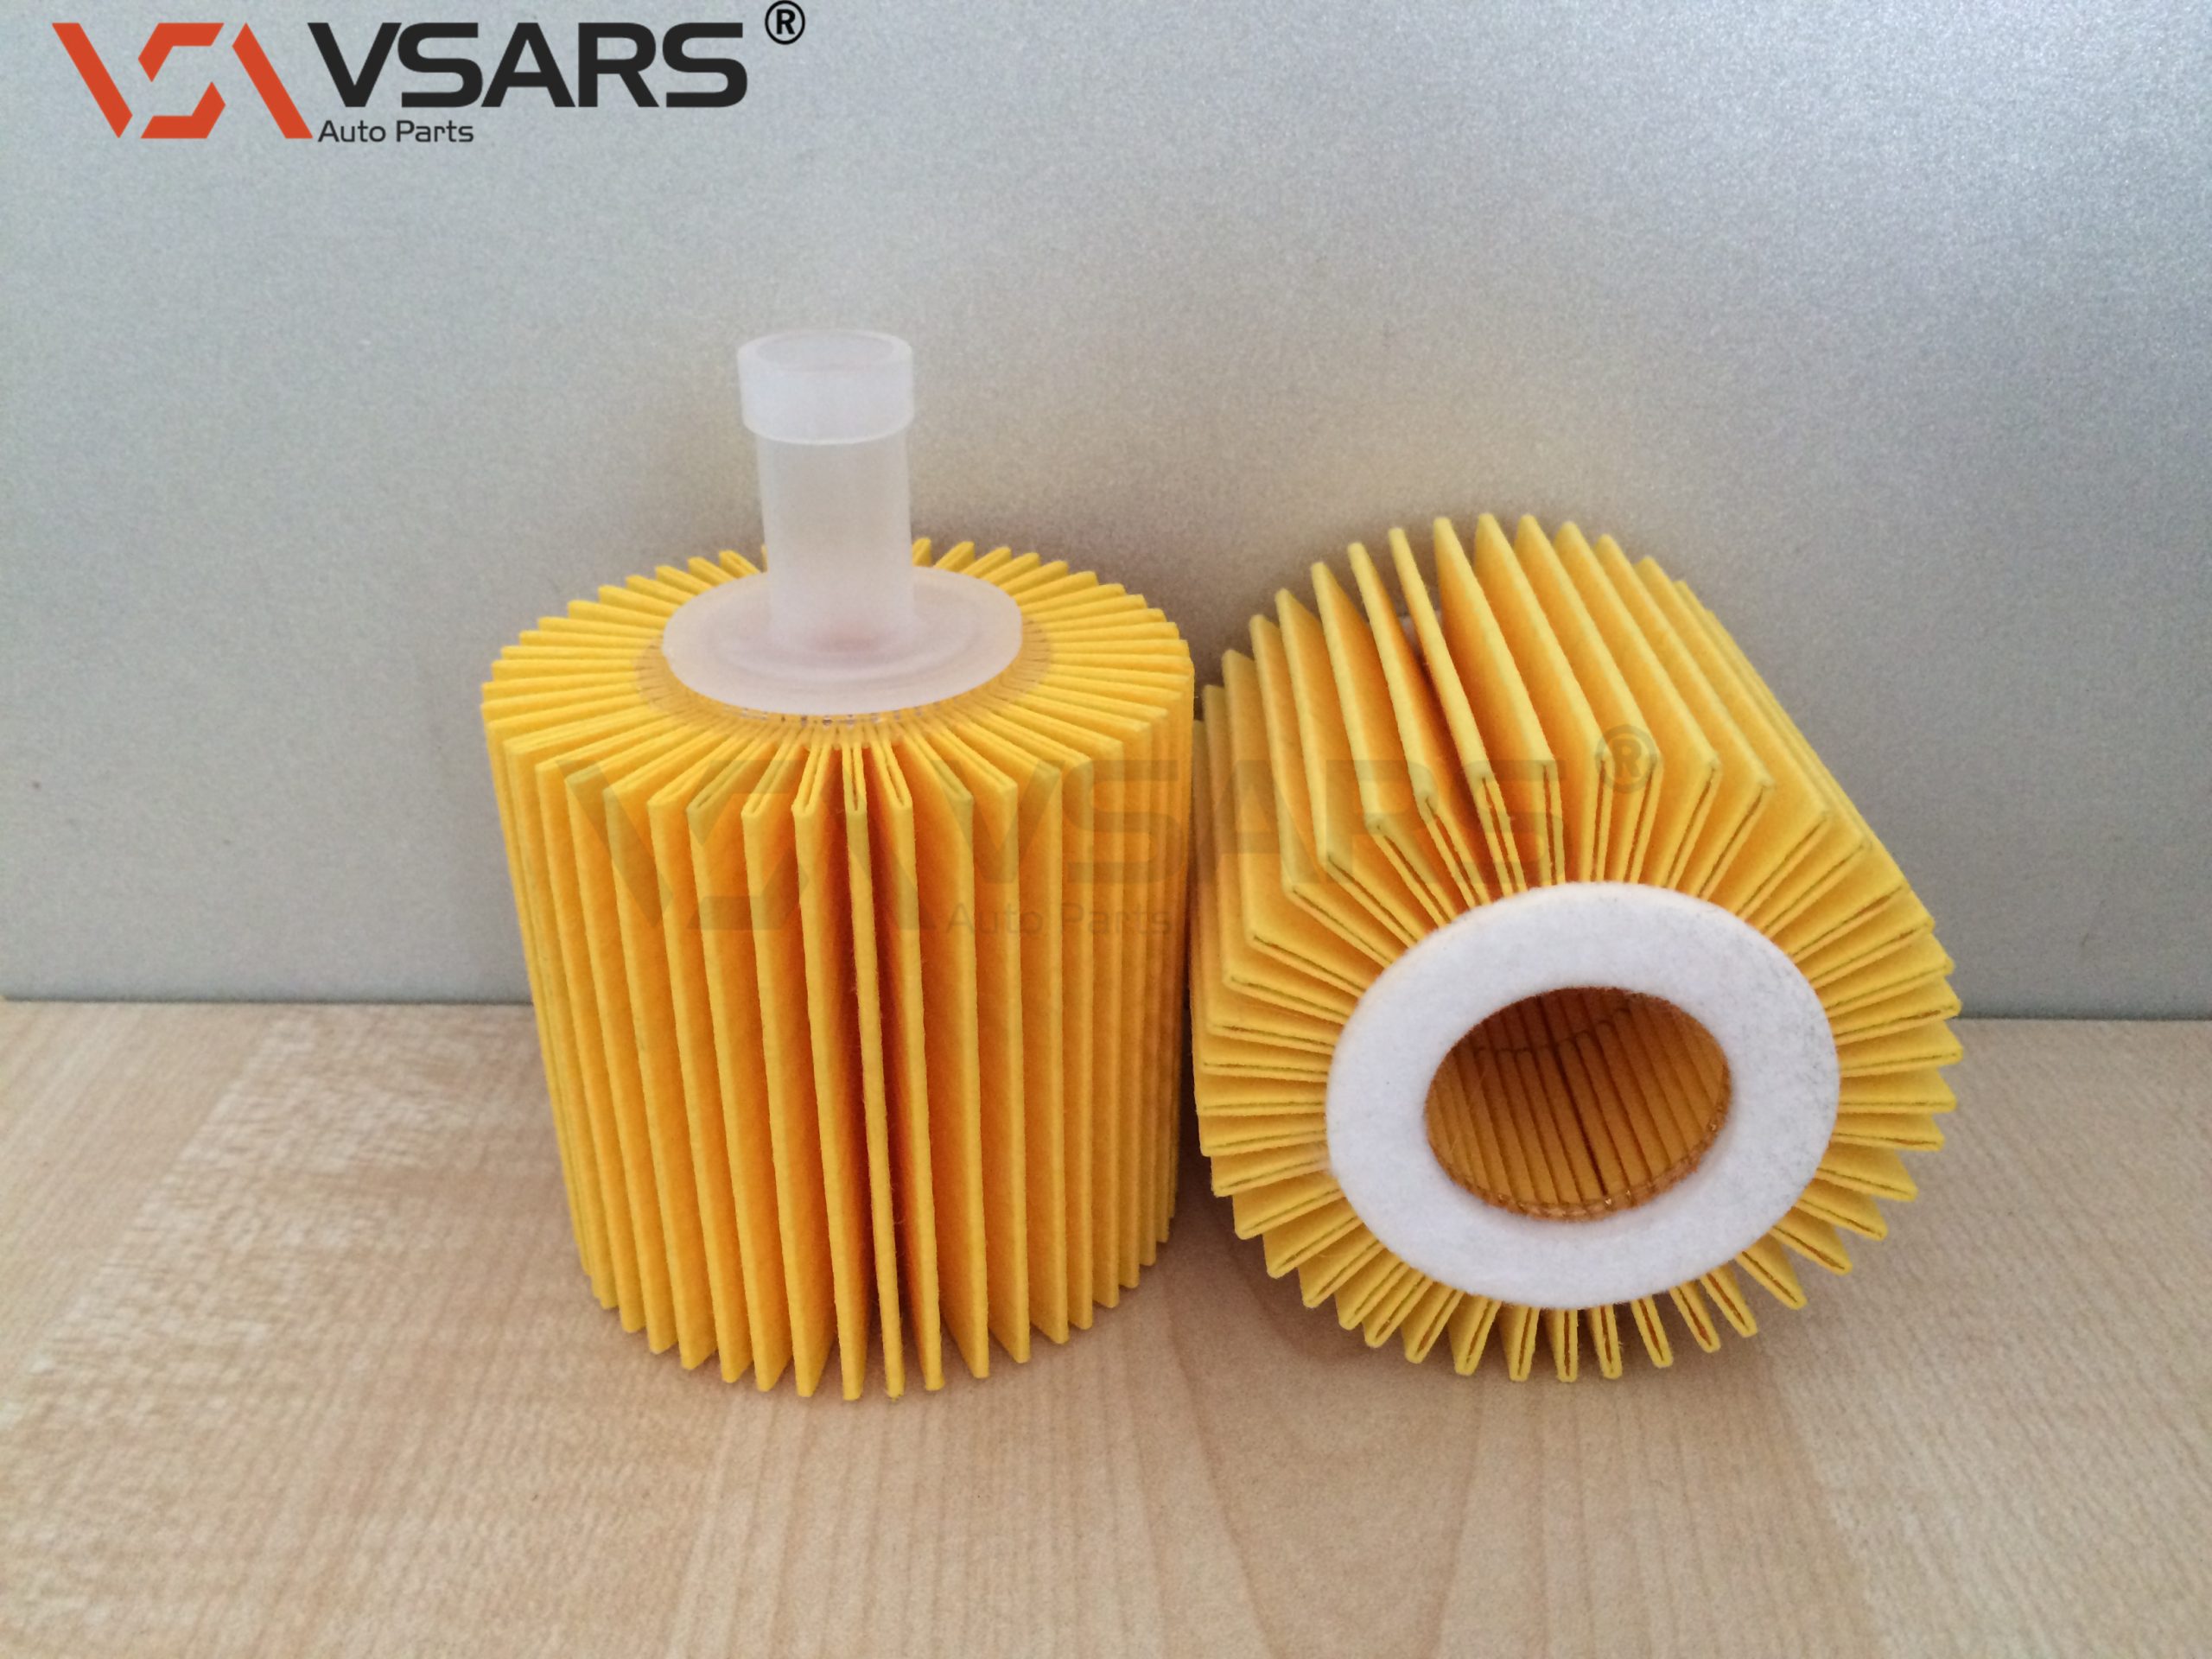 oil-filter-vso-20002-vsars-auto-filter-manufacturer-oil-filter